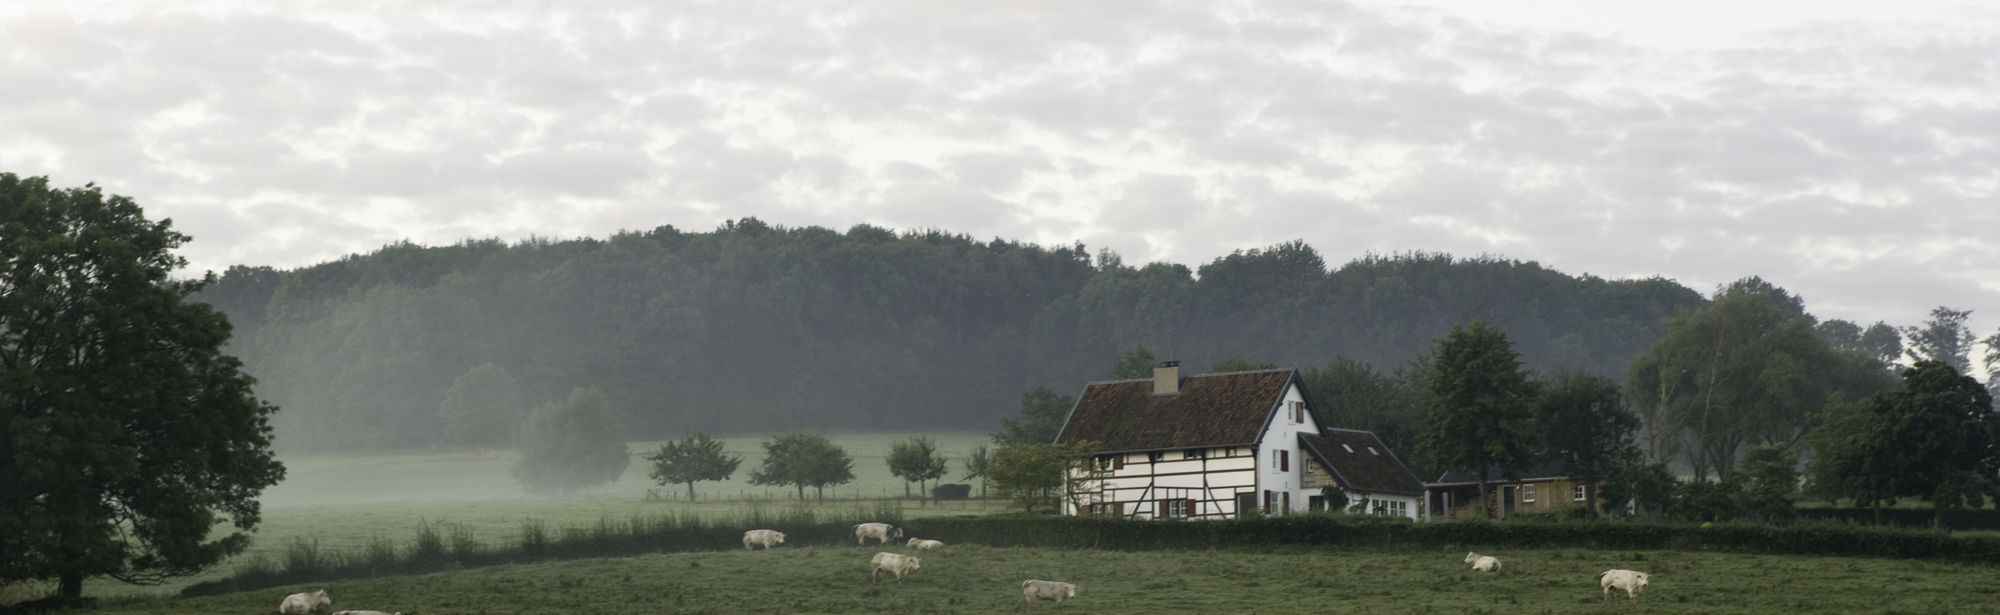 Vakwerkhuis in mistig landschap met schapen in de weide